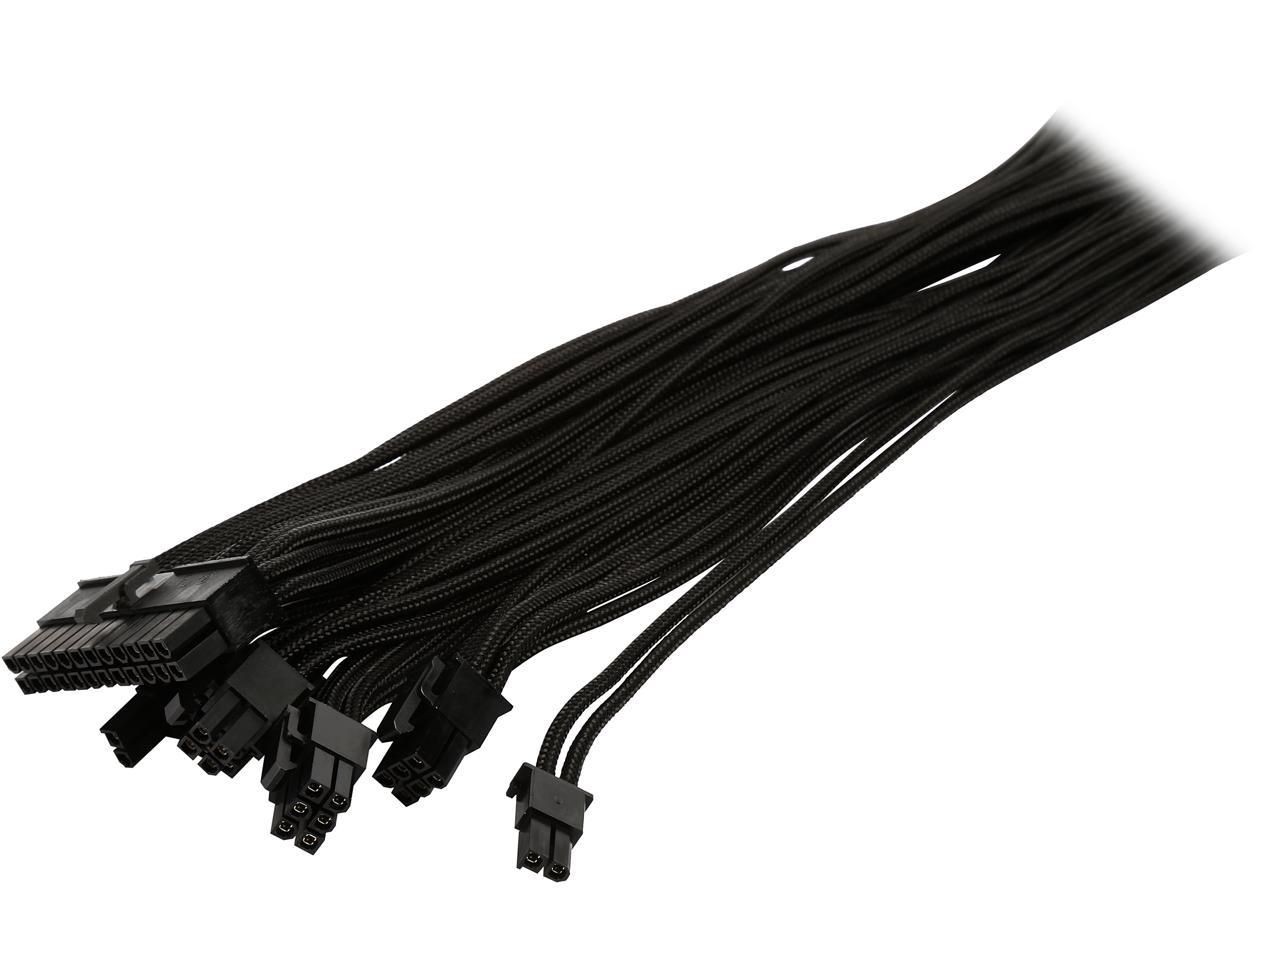 Phanteks PH-CB-CMBO_BK Universal Extension Cables Kit @ Newegg $7